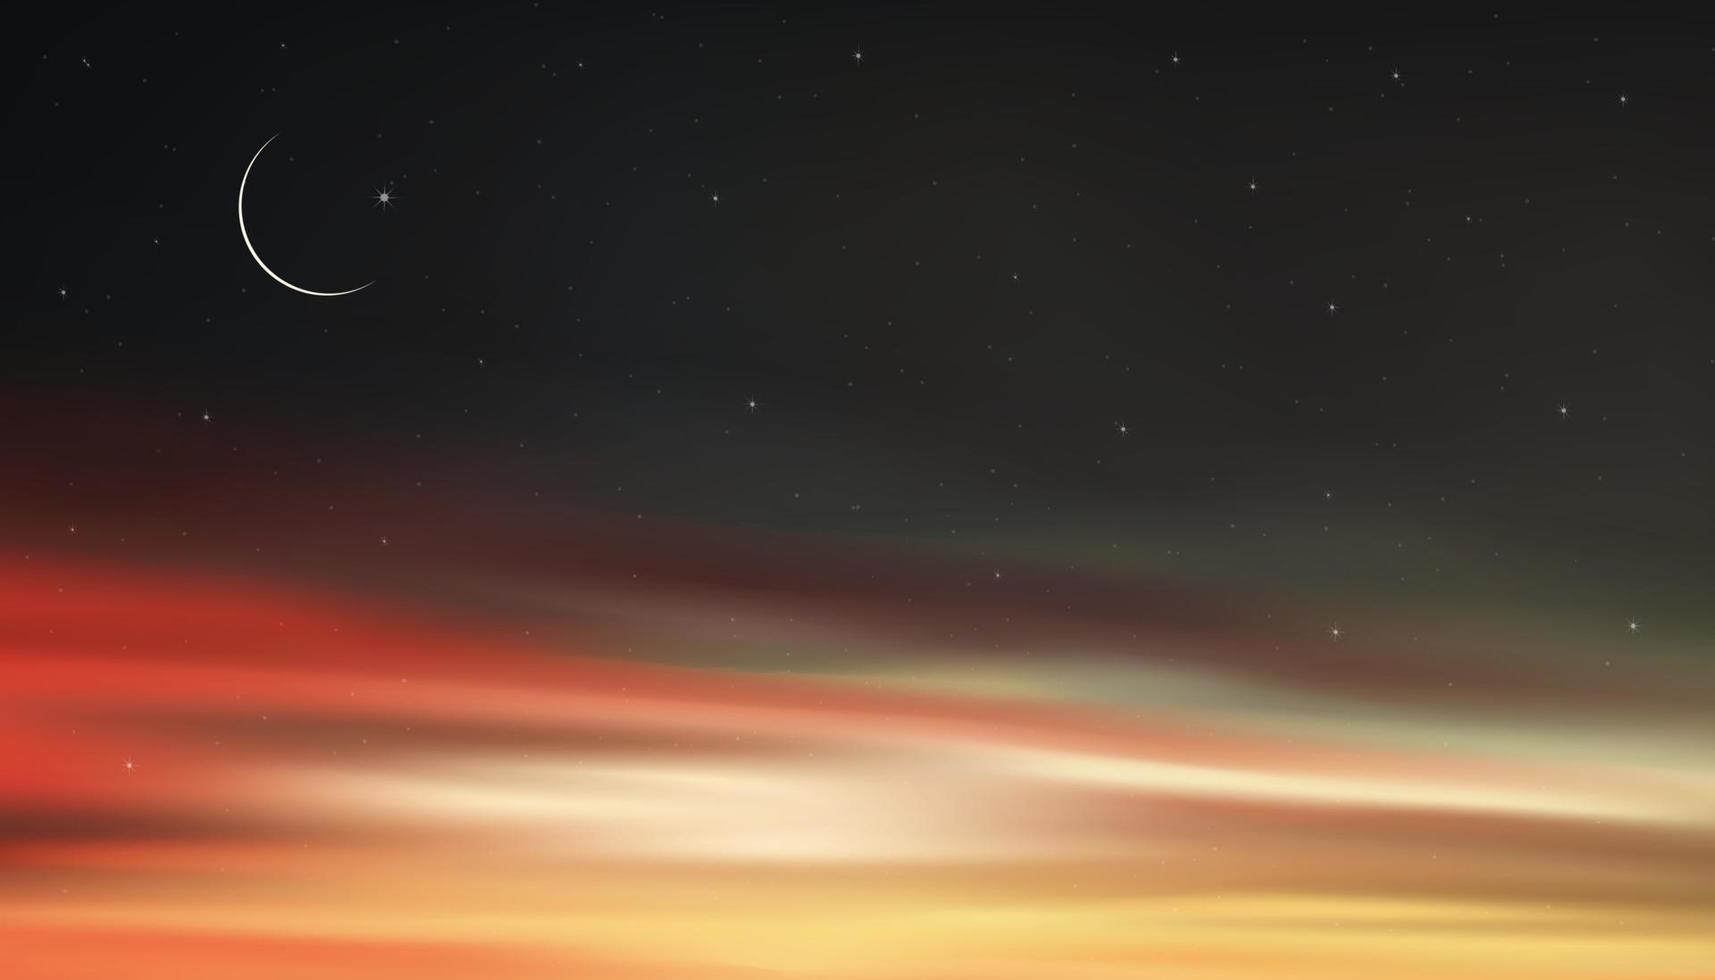 nachtelijke hemel met wassende maan en sterren schijnt, landschap dramatische drak grijs, rood en orangesky, mooie schemering hemel en schemering, vectorillustratie natuurlijk voor ramadan kareem, eid mubarak achtergrond vector